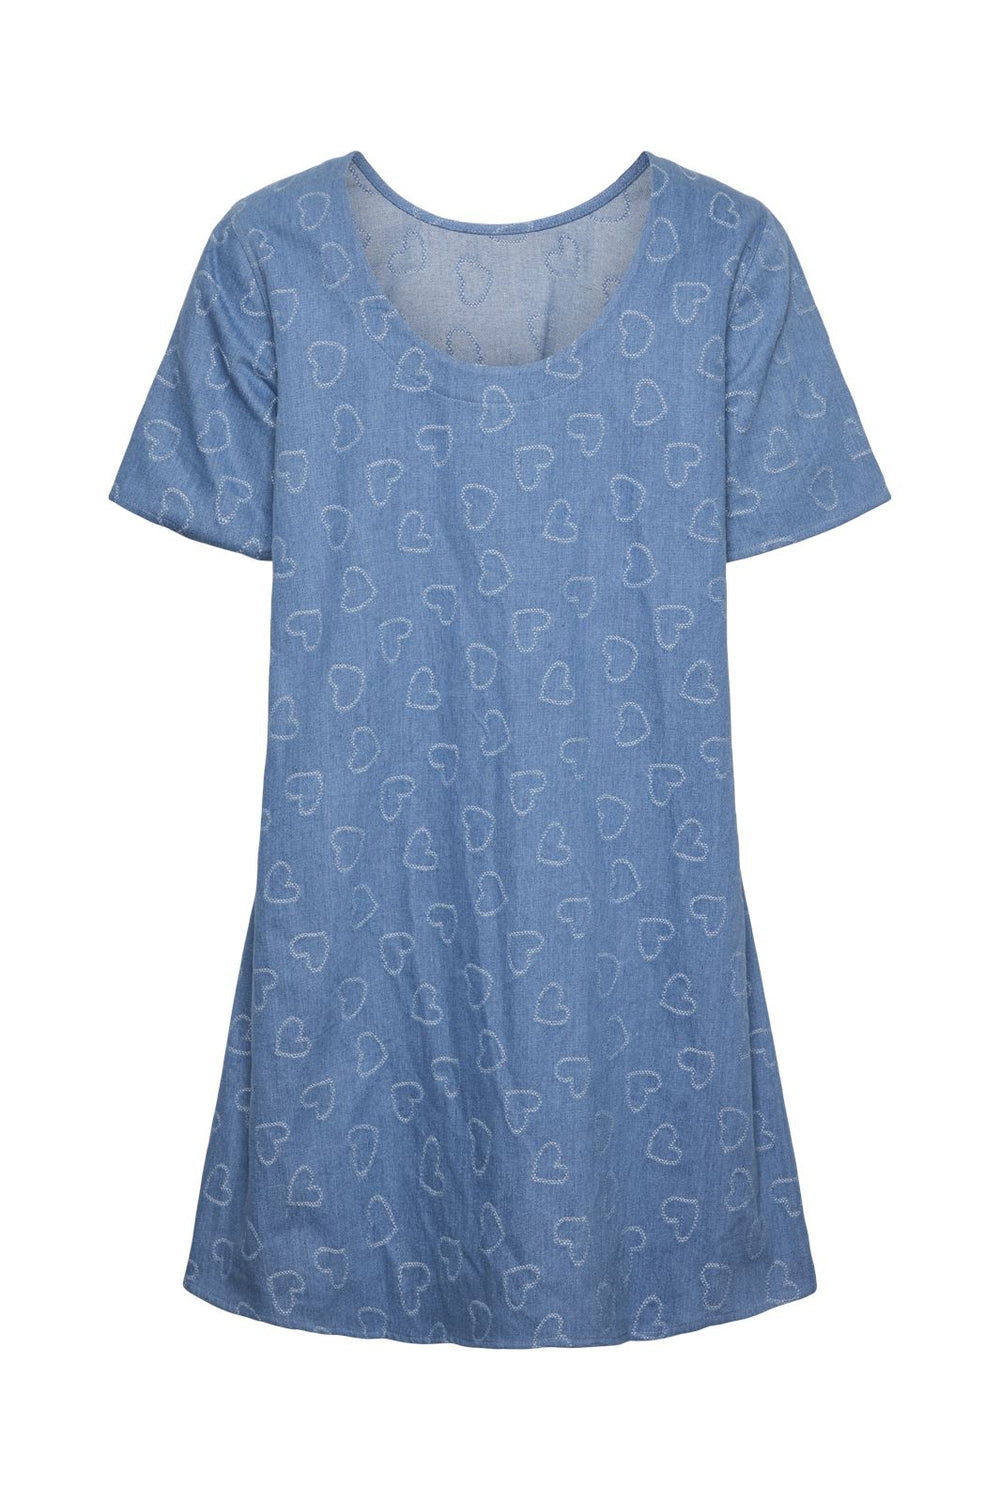 Pieces - Pcdiana Ss O-Neck Short Dress - 4624192 Medium Blue Denim